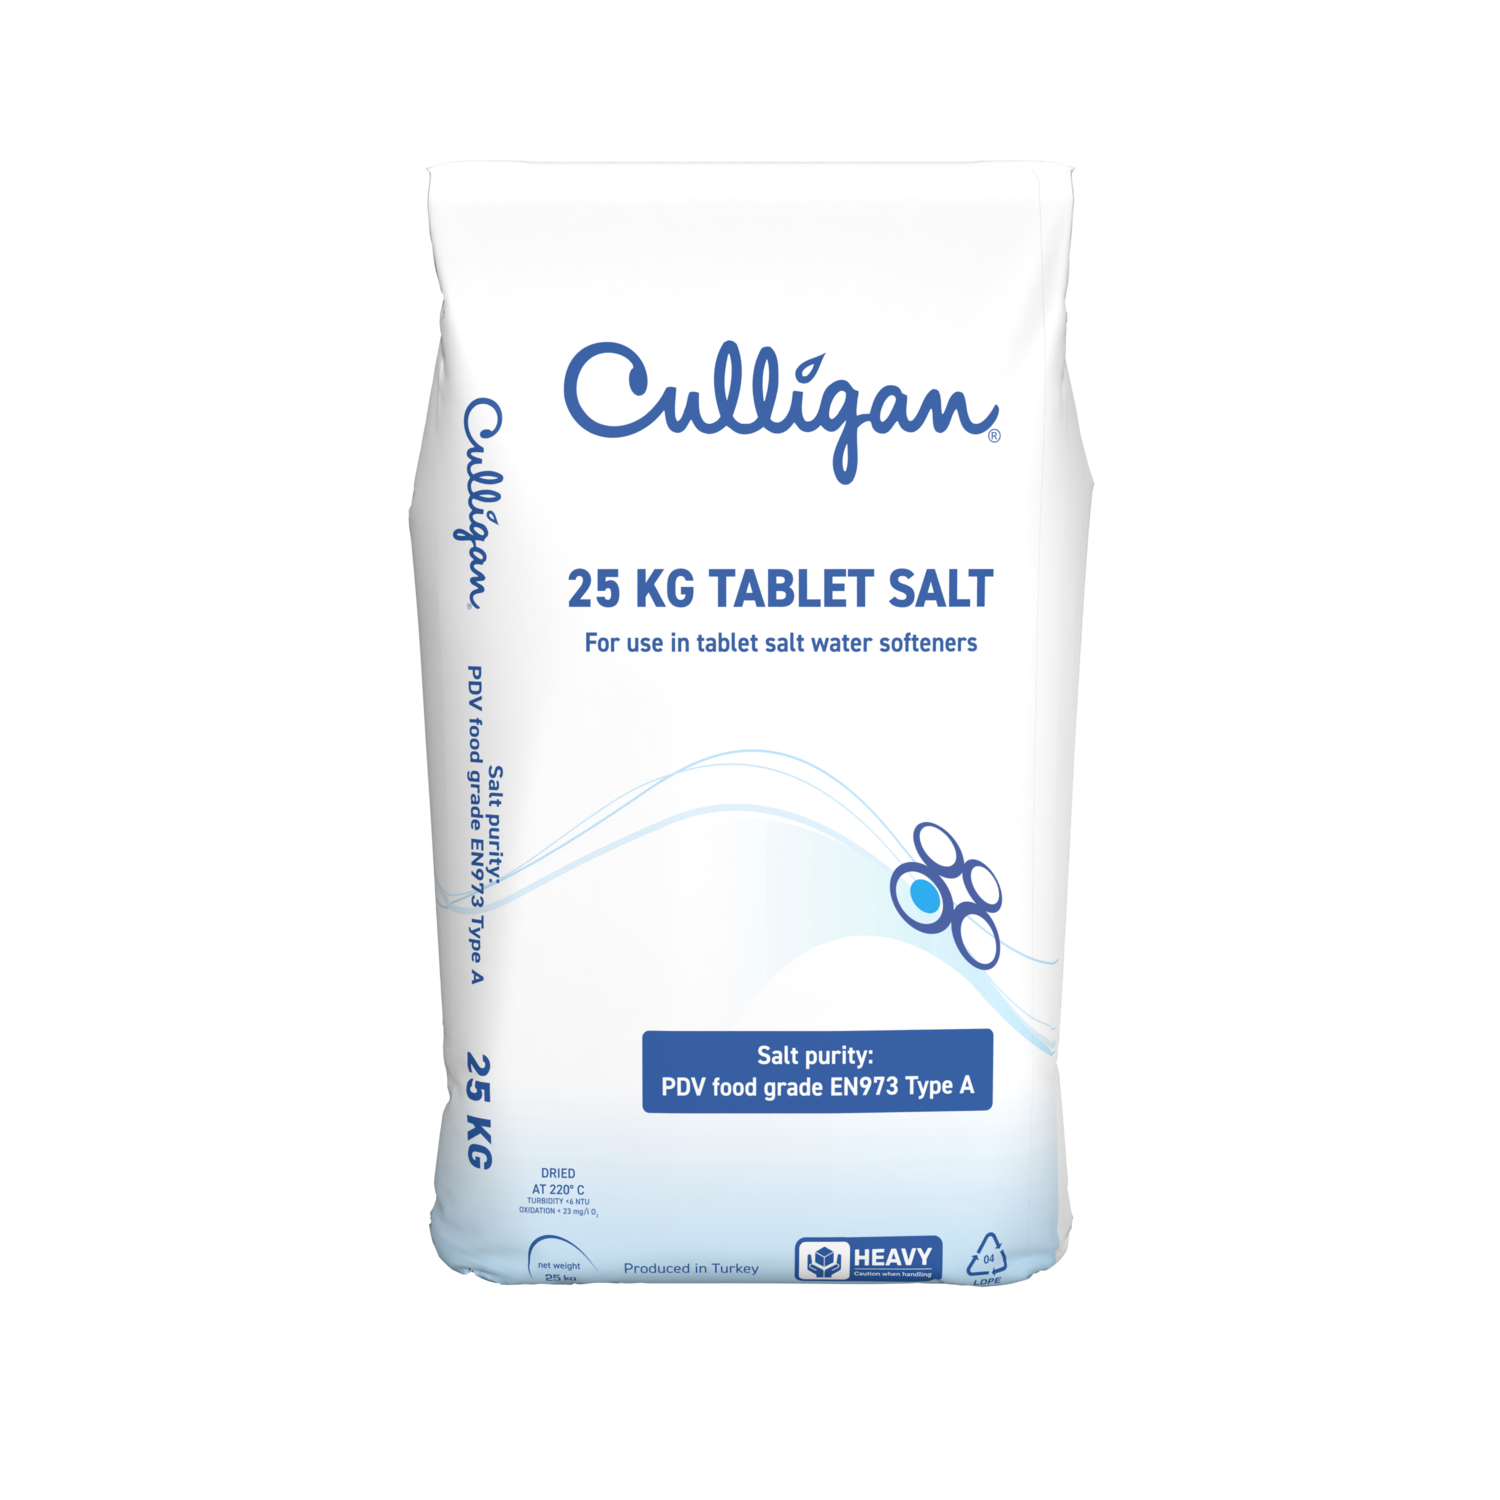 Tablet Salt 25kg - 10 packs delivered